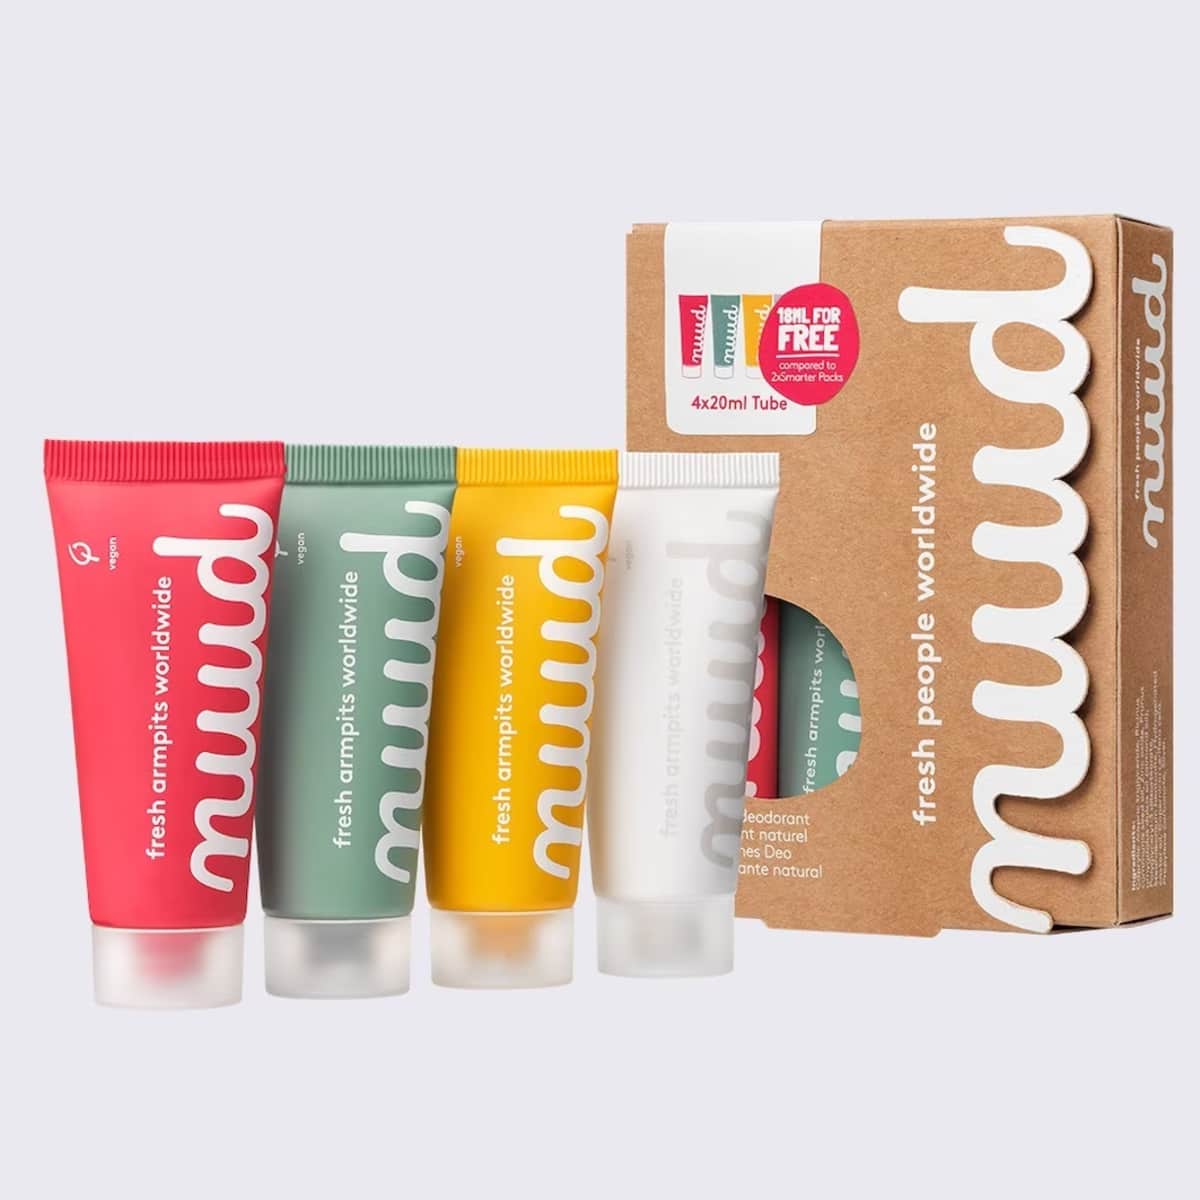 Nuud - deodorant - family pack - 4 x 20ml tube - nieuwe formule